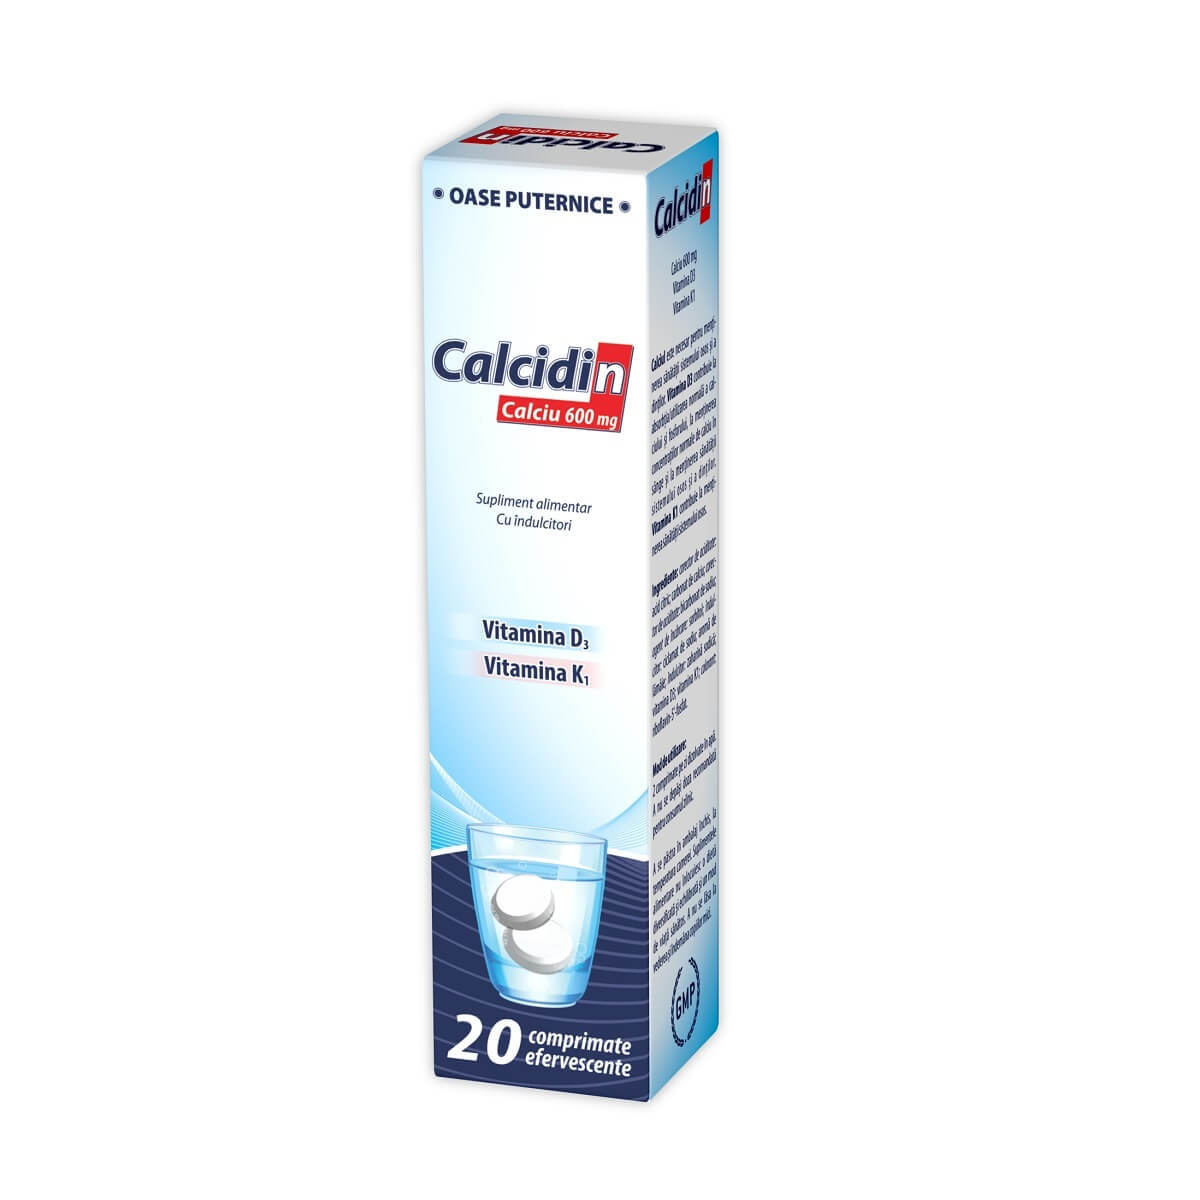 thiossen turbo 600 mg/50 ml pret Calcidin 600 mg, 20 comprimate efervescente, Zdrovit